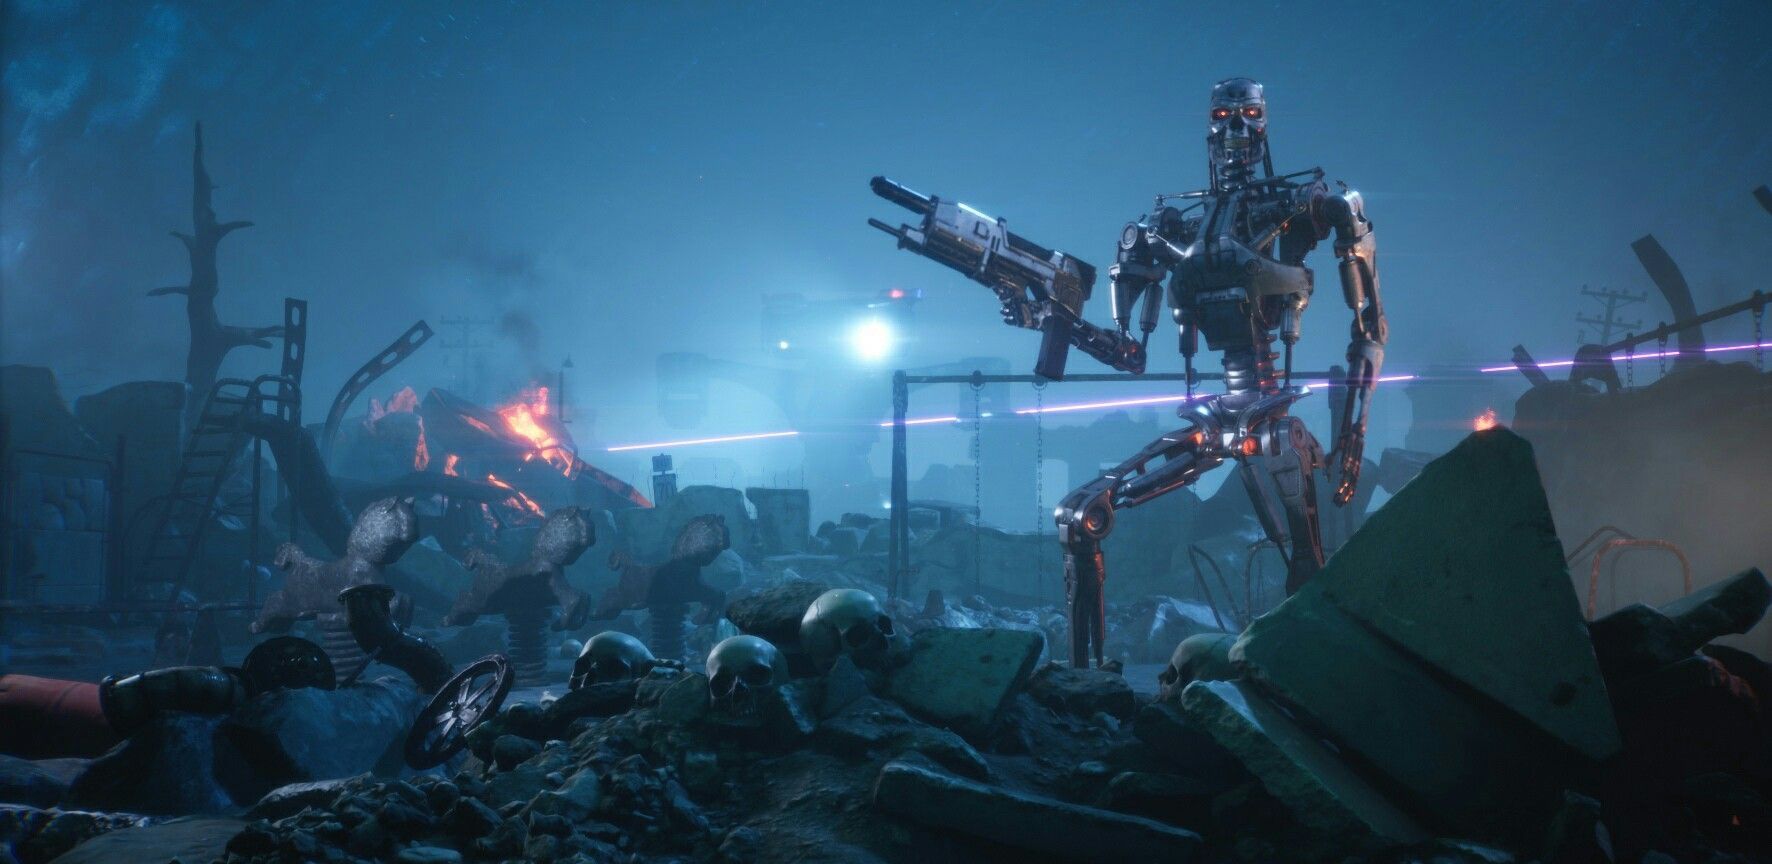 Terminator exoskeleton gun wielding ai